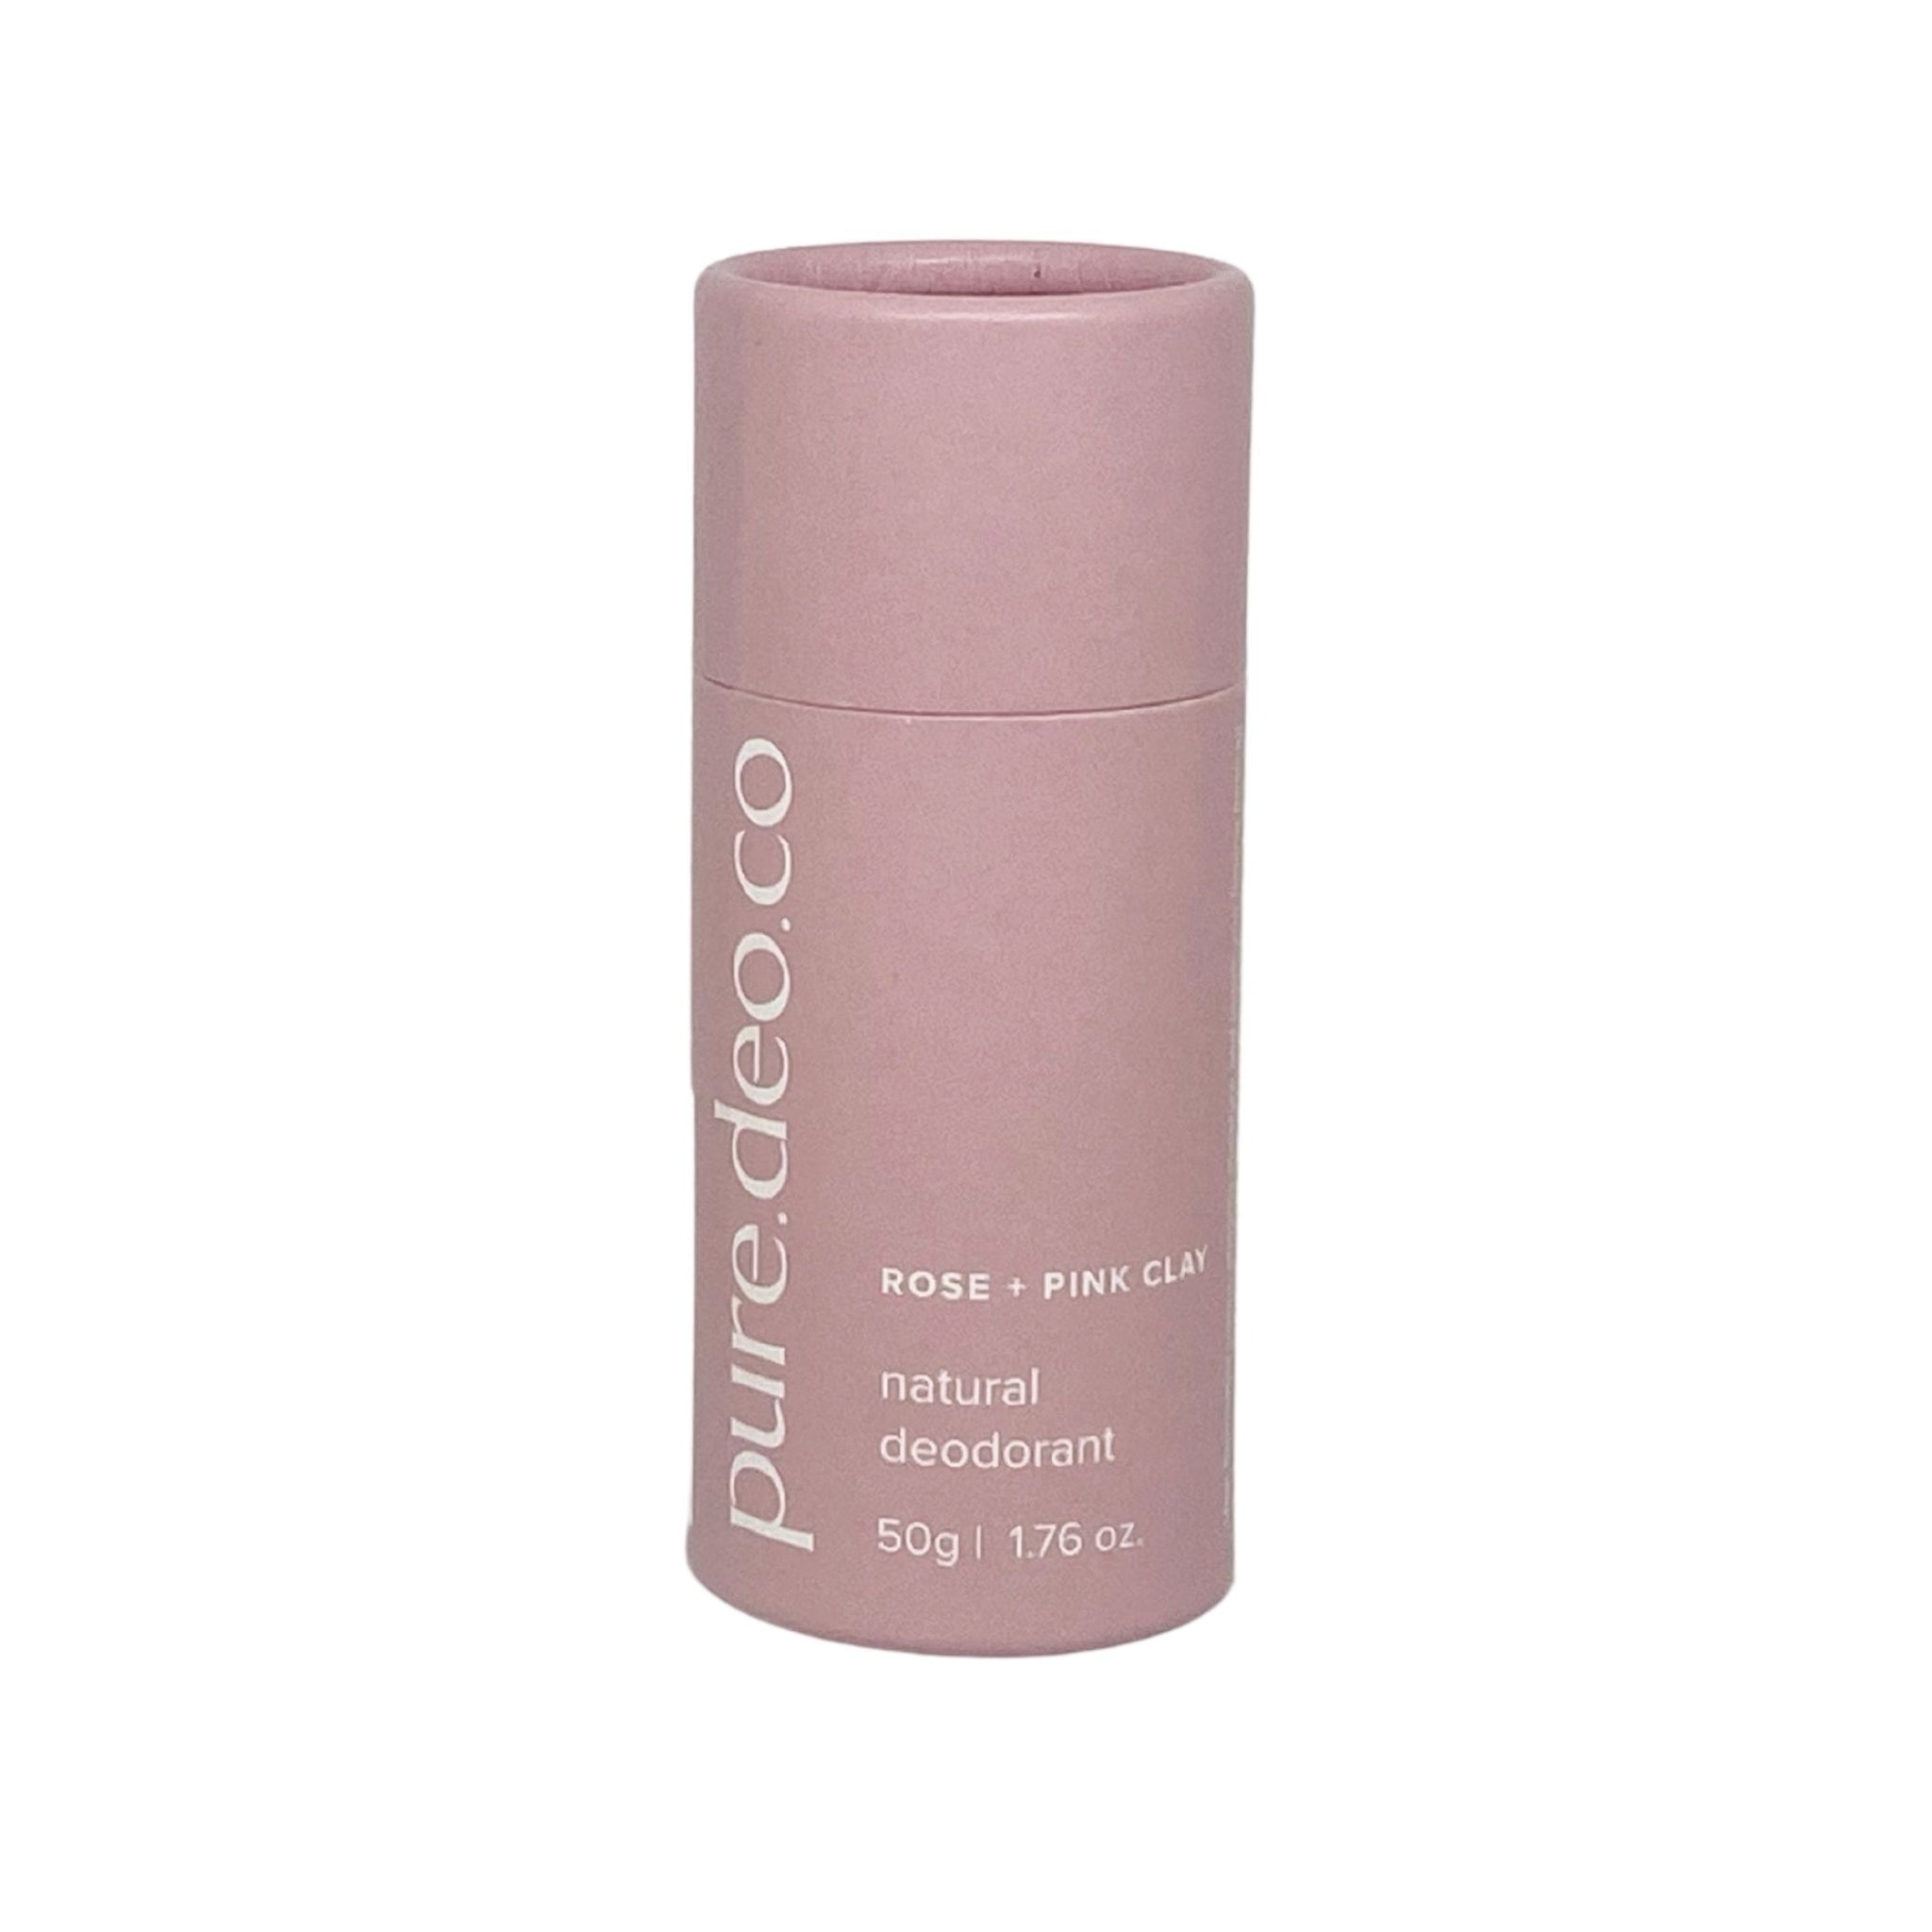 Natural Deodorant - Rose With Pink Clay - Original Formula